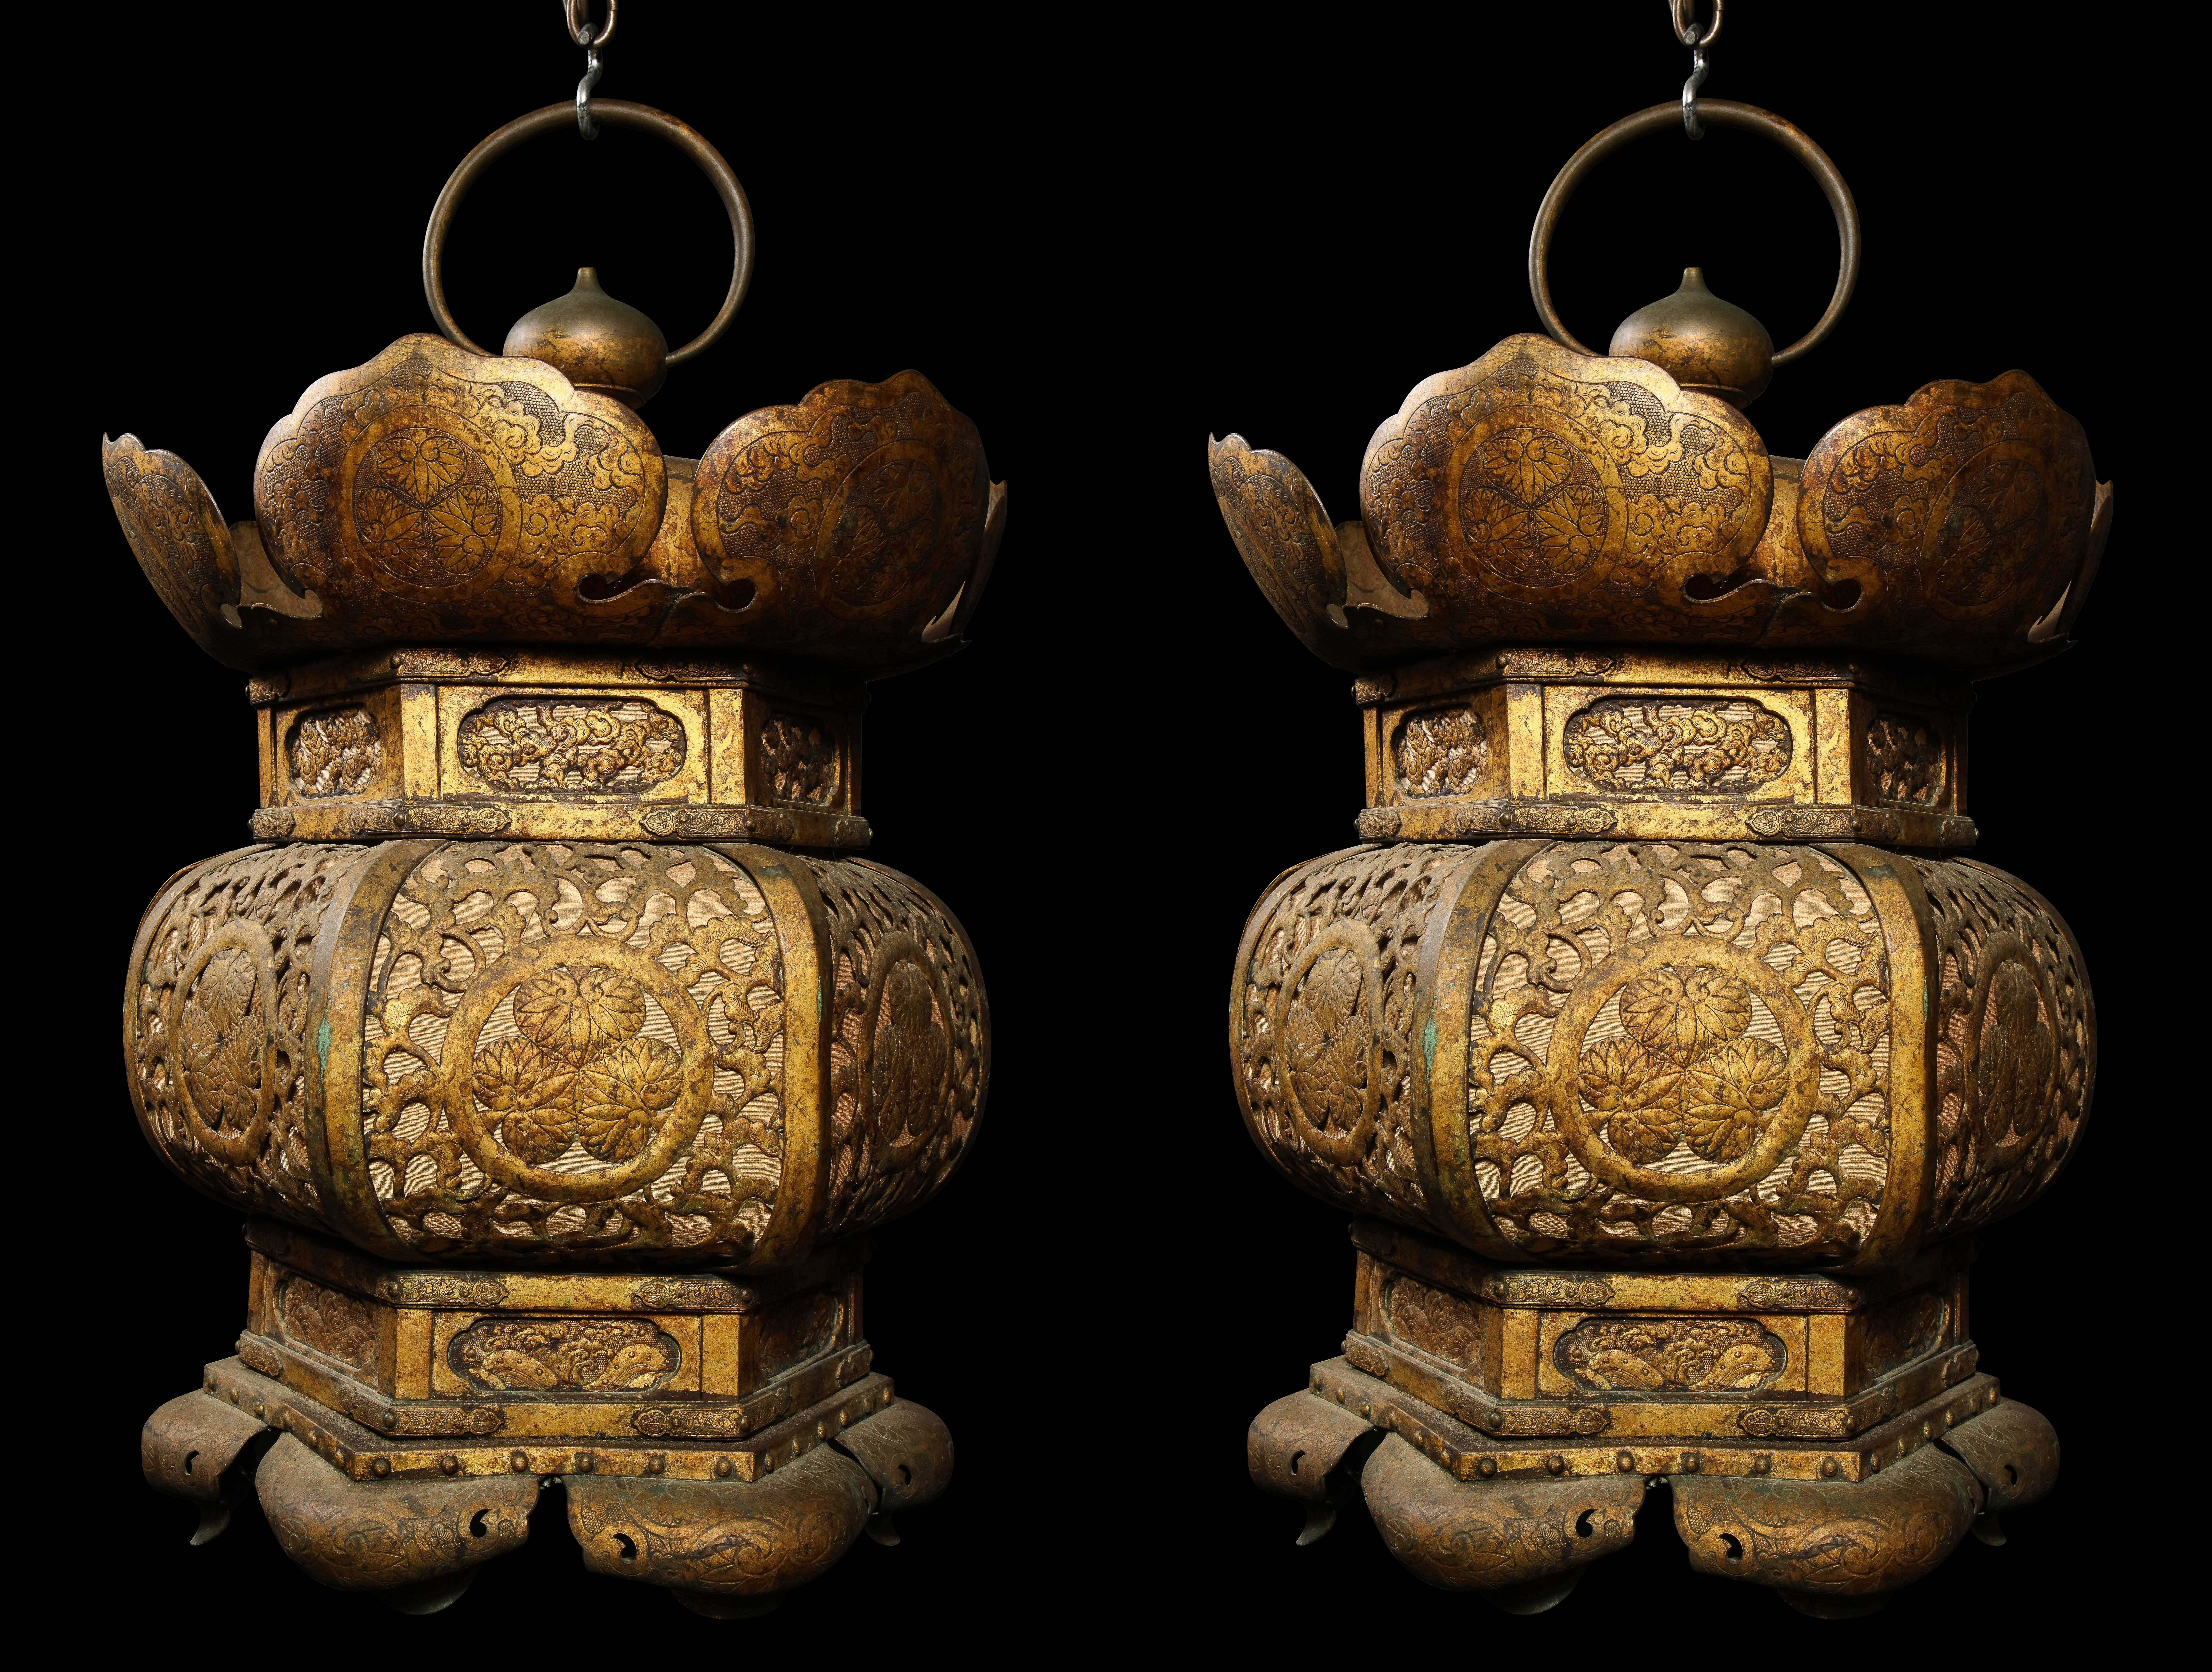 Zwei große und einzigartige antike japanische Laternen in achteckiger Form aus vergoldetem Kupfer.